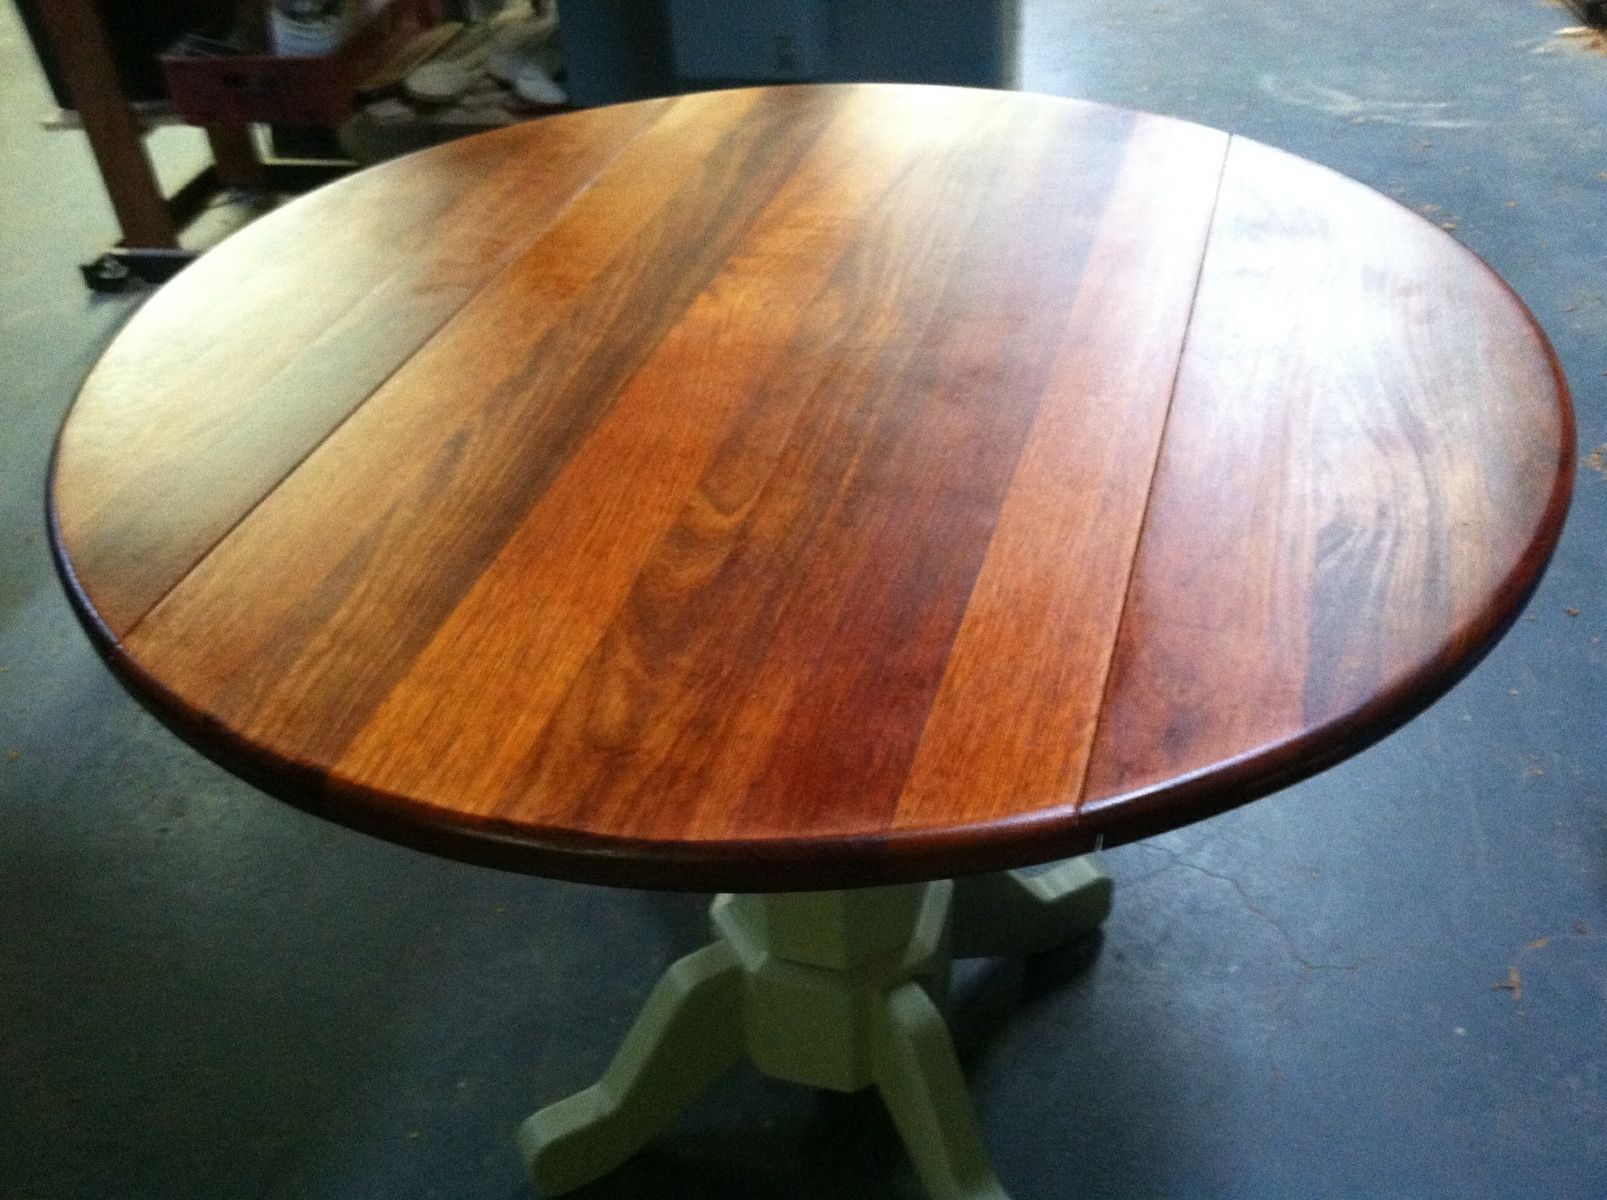 36 inch round drop leaf kitchen table set